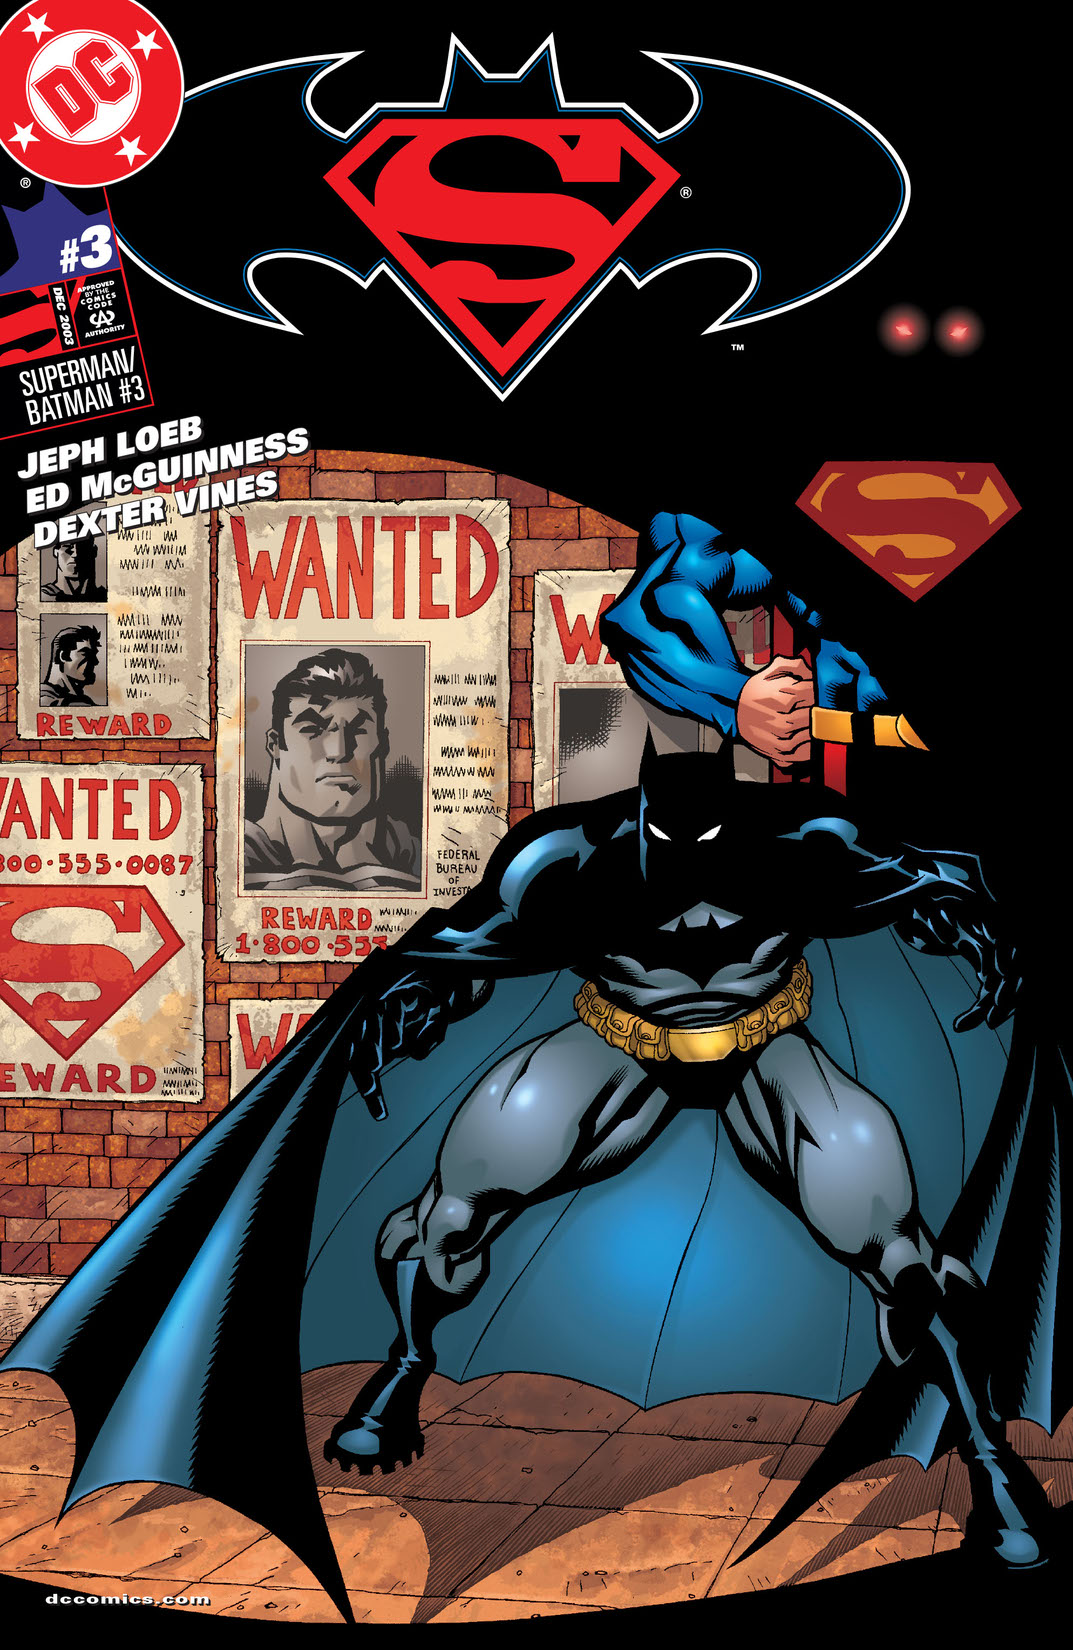 Superman Batman #3 preview images